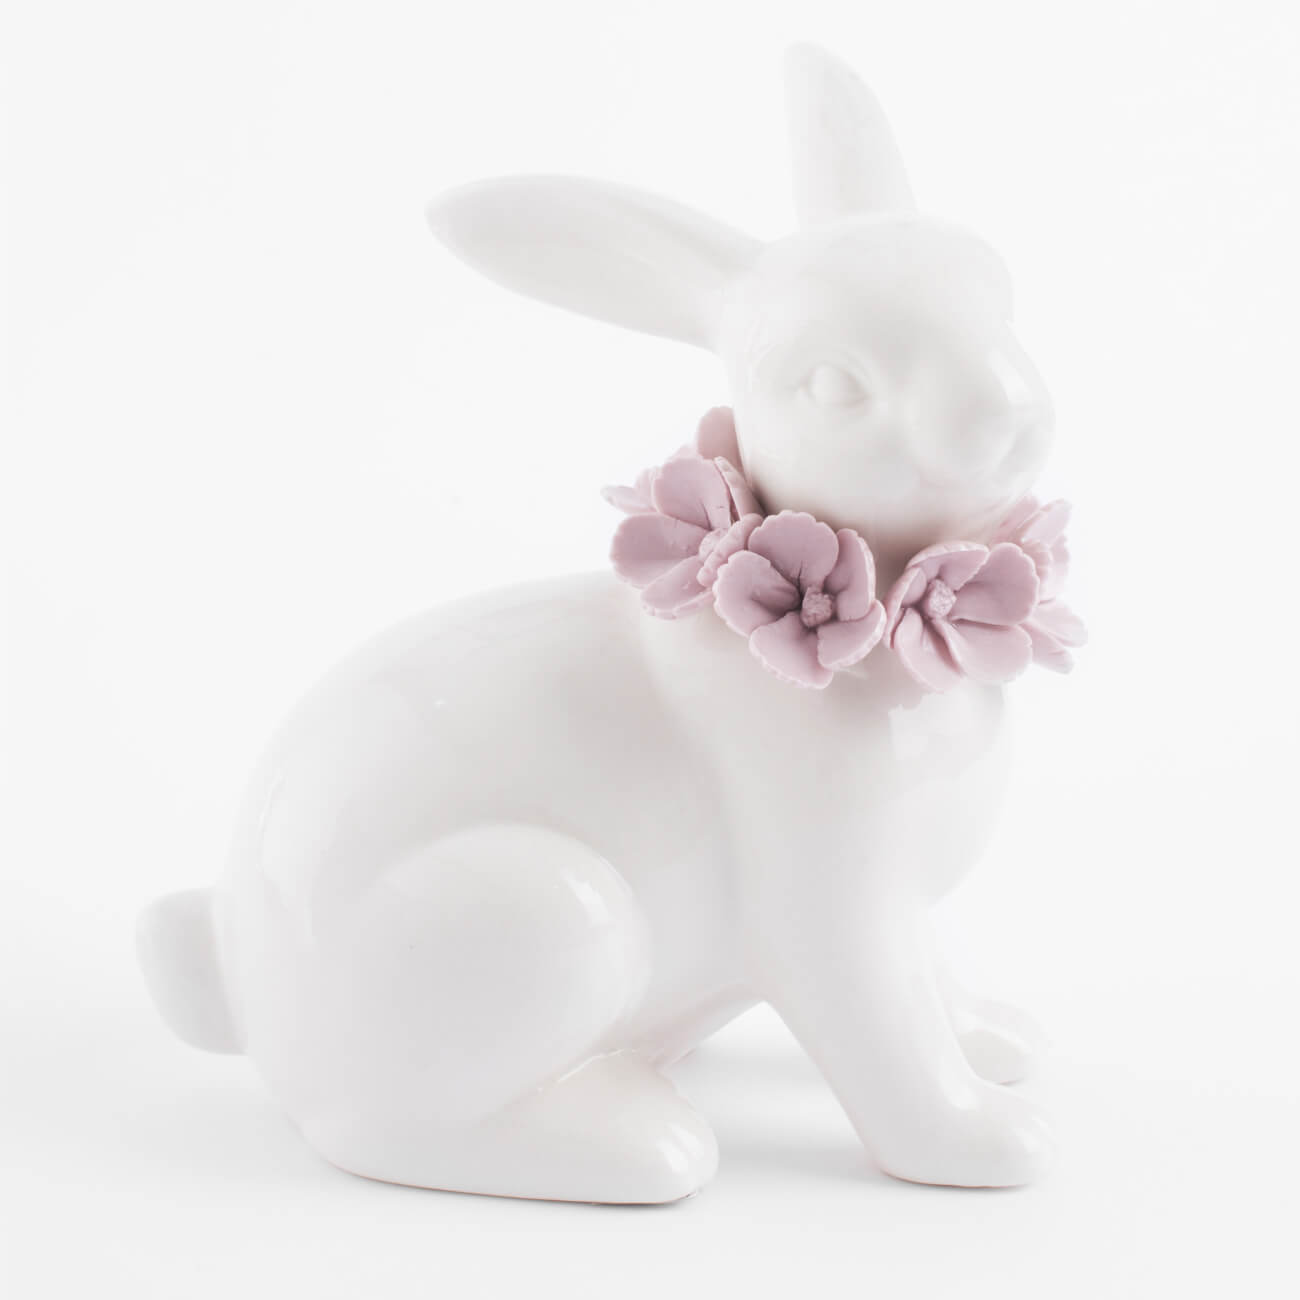 Статуэтка, 15 см, фарфор Porcelain, белая, Кролик в цветах, Pure Easter статуэтка 14 см фарфор p бежевая кролик сидит natural easter